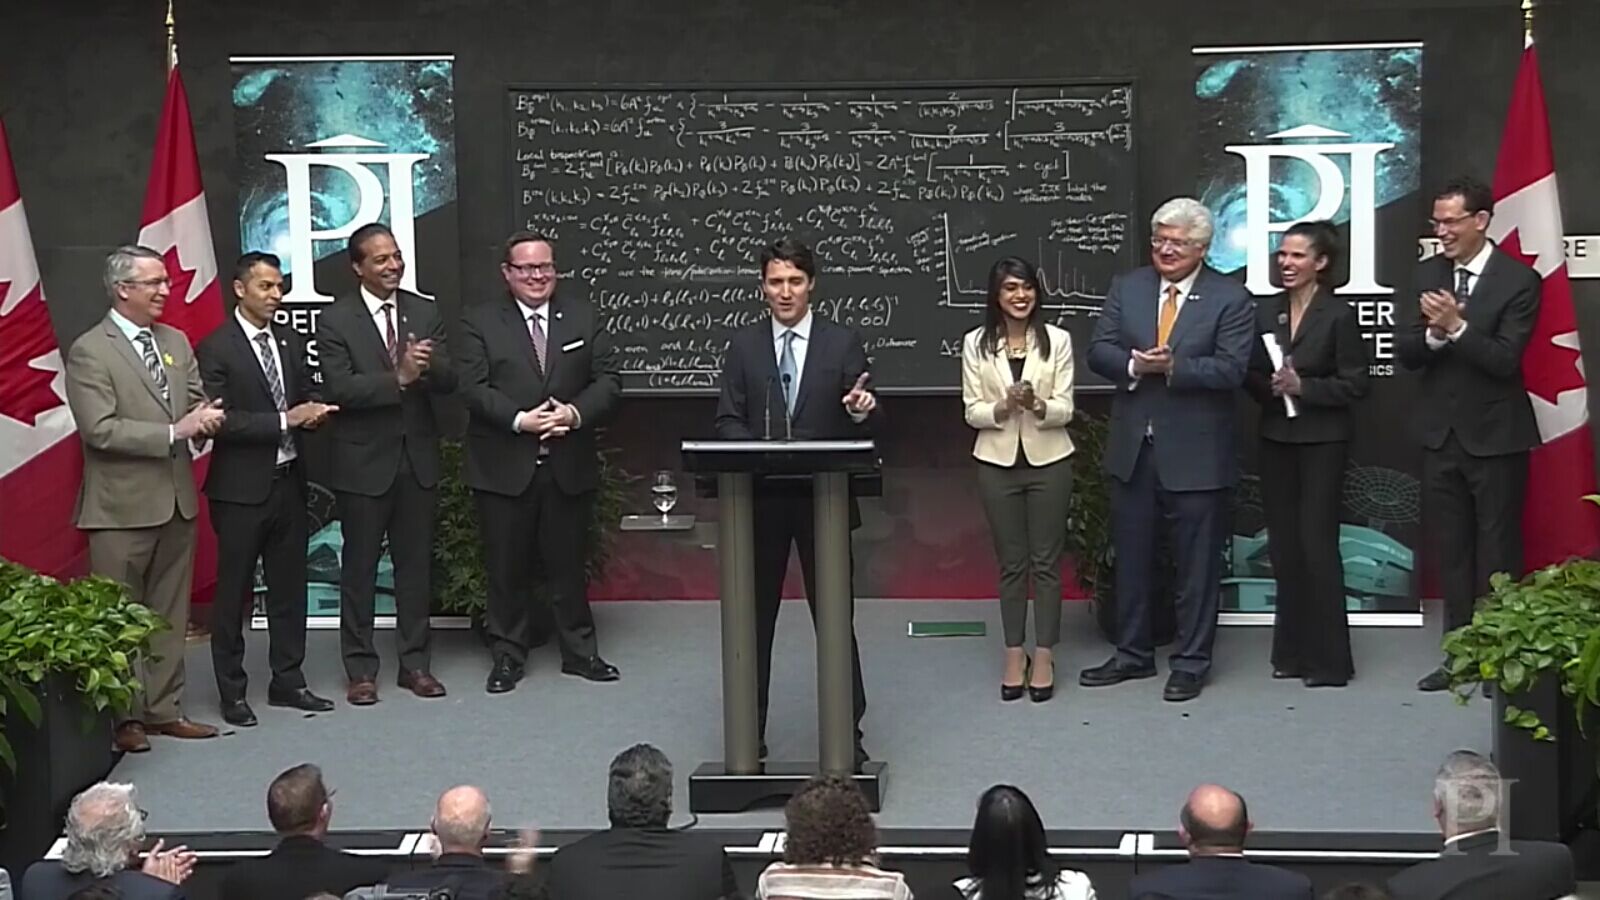 加拿大总理精确讲解量子计算 成为世界政坛新一代颜值代表